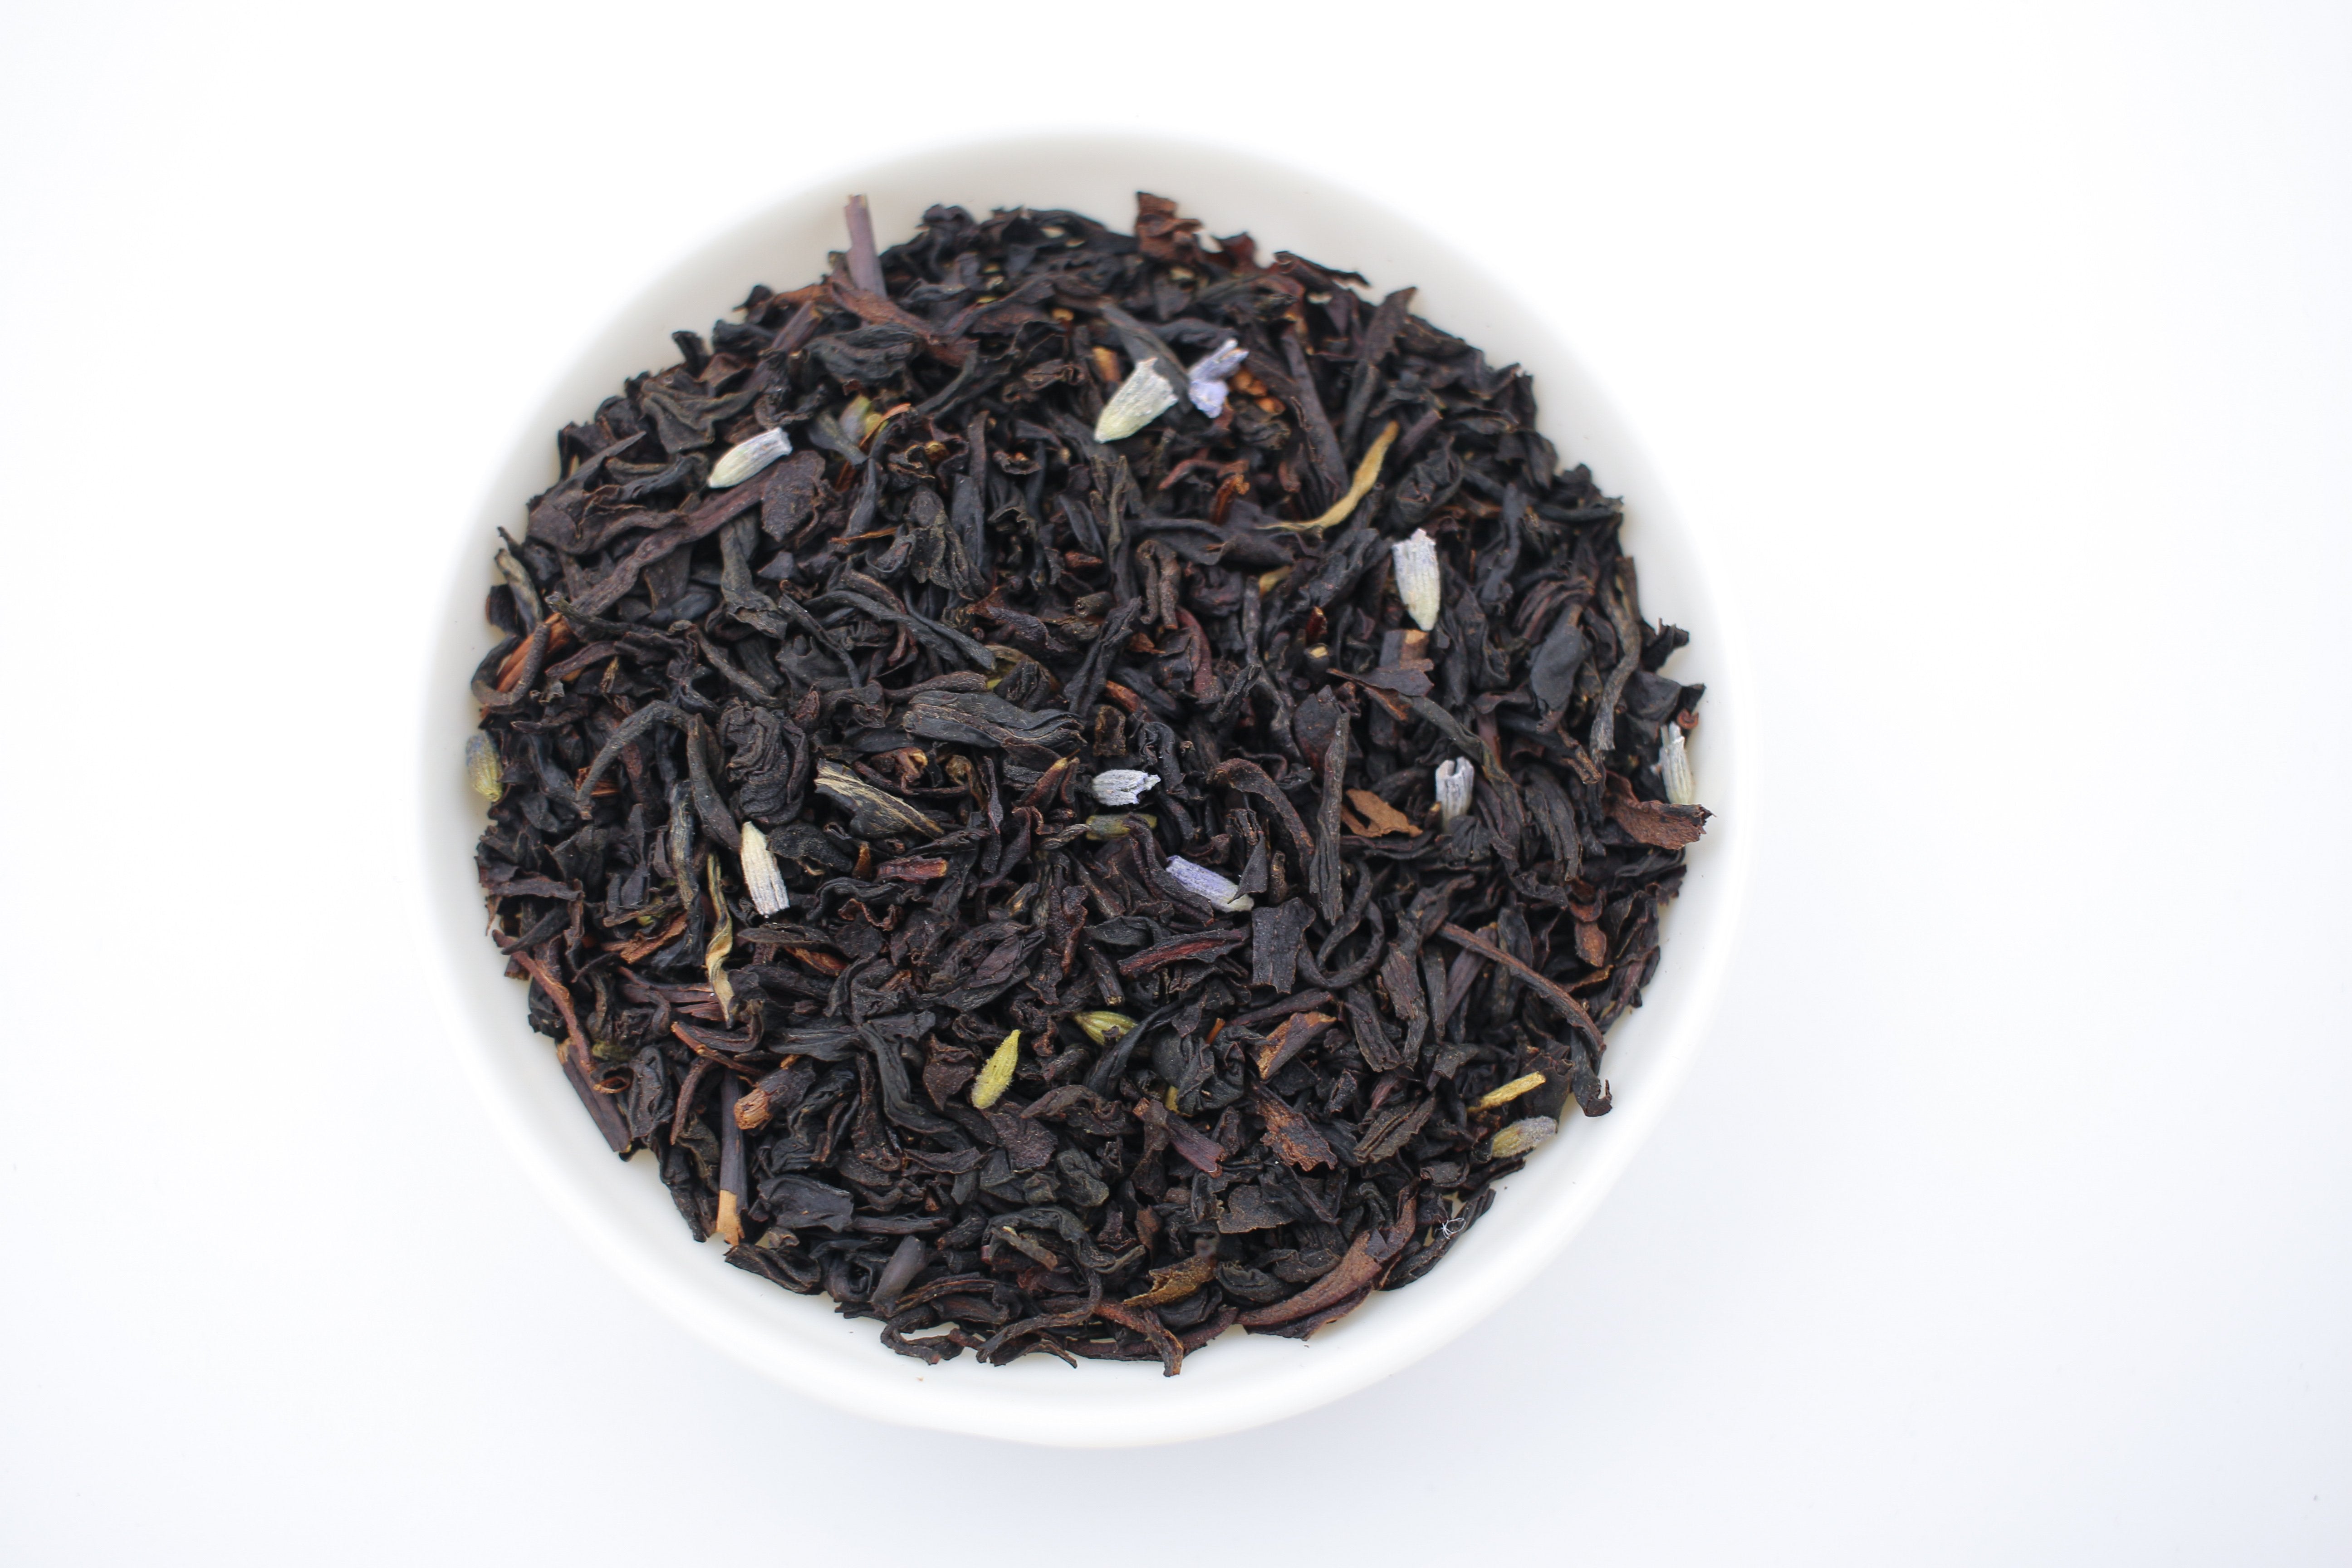 India "Earl Grey" Black Tea